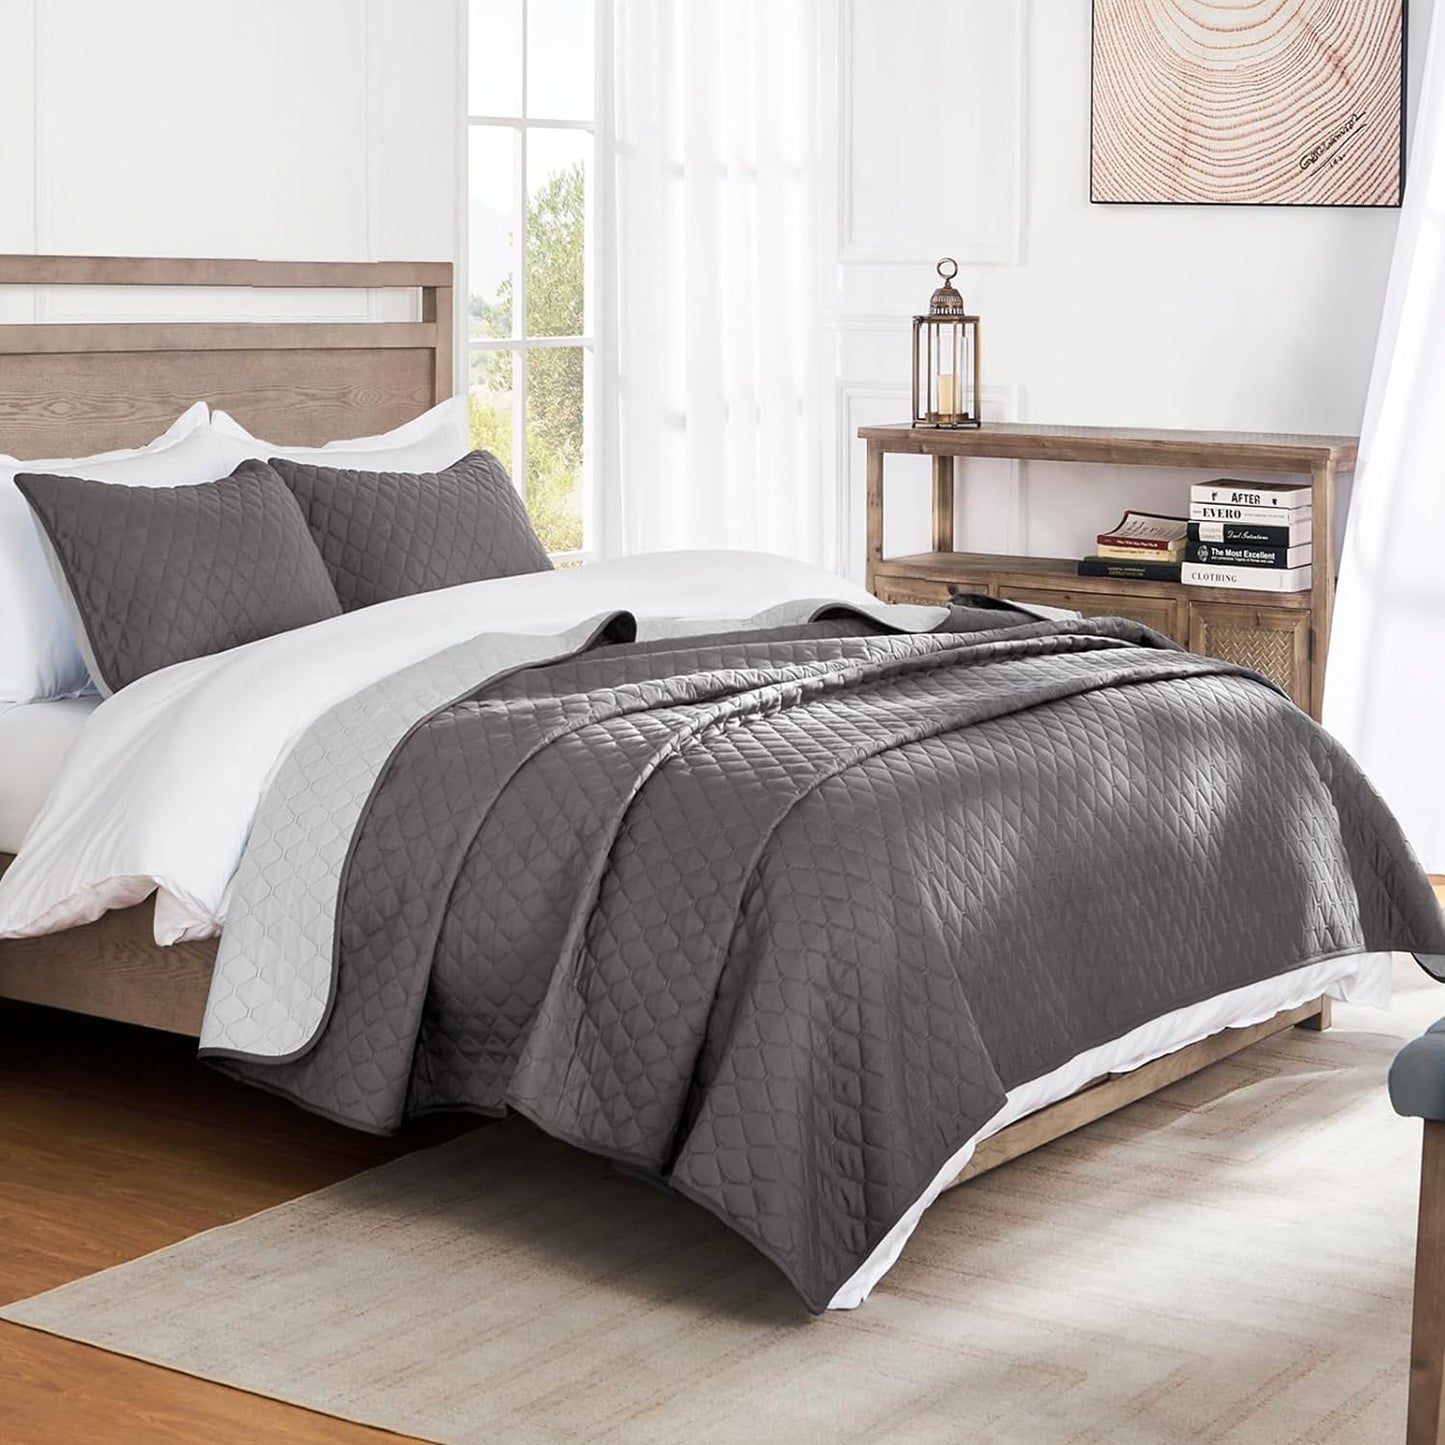 Solid Grey 3 Piece Lightweight Bedding Quilt Set